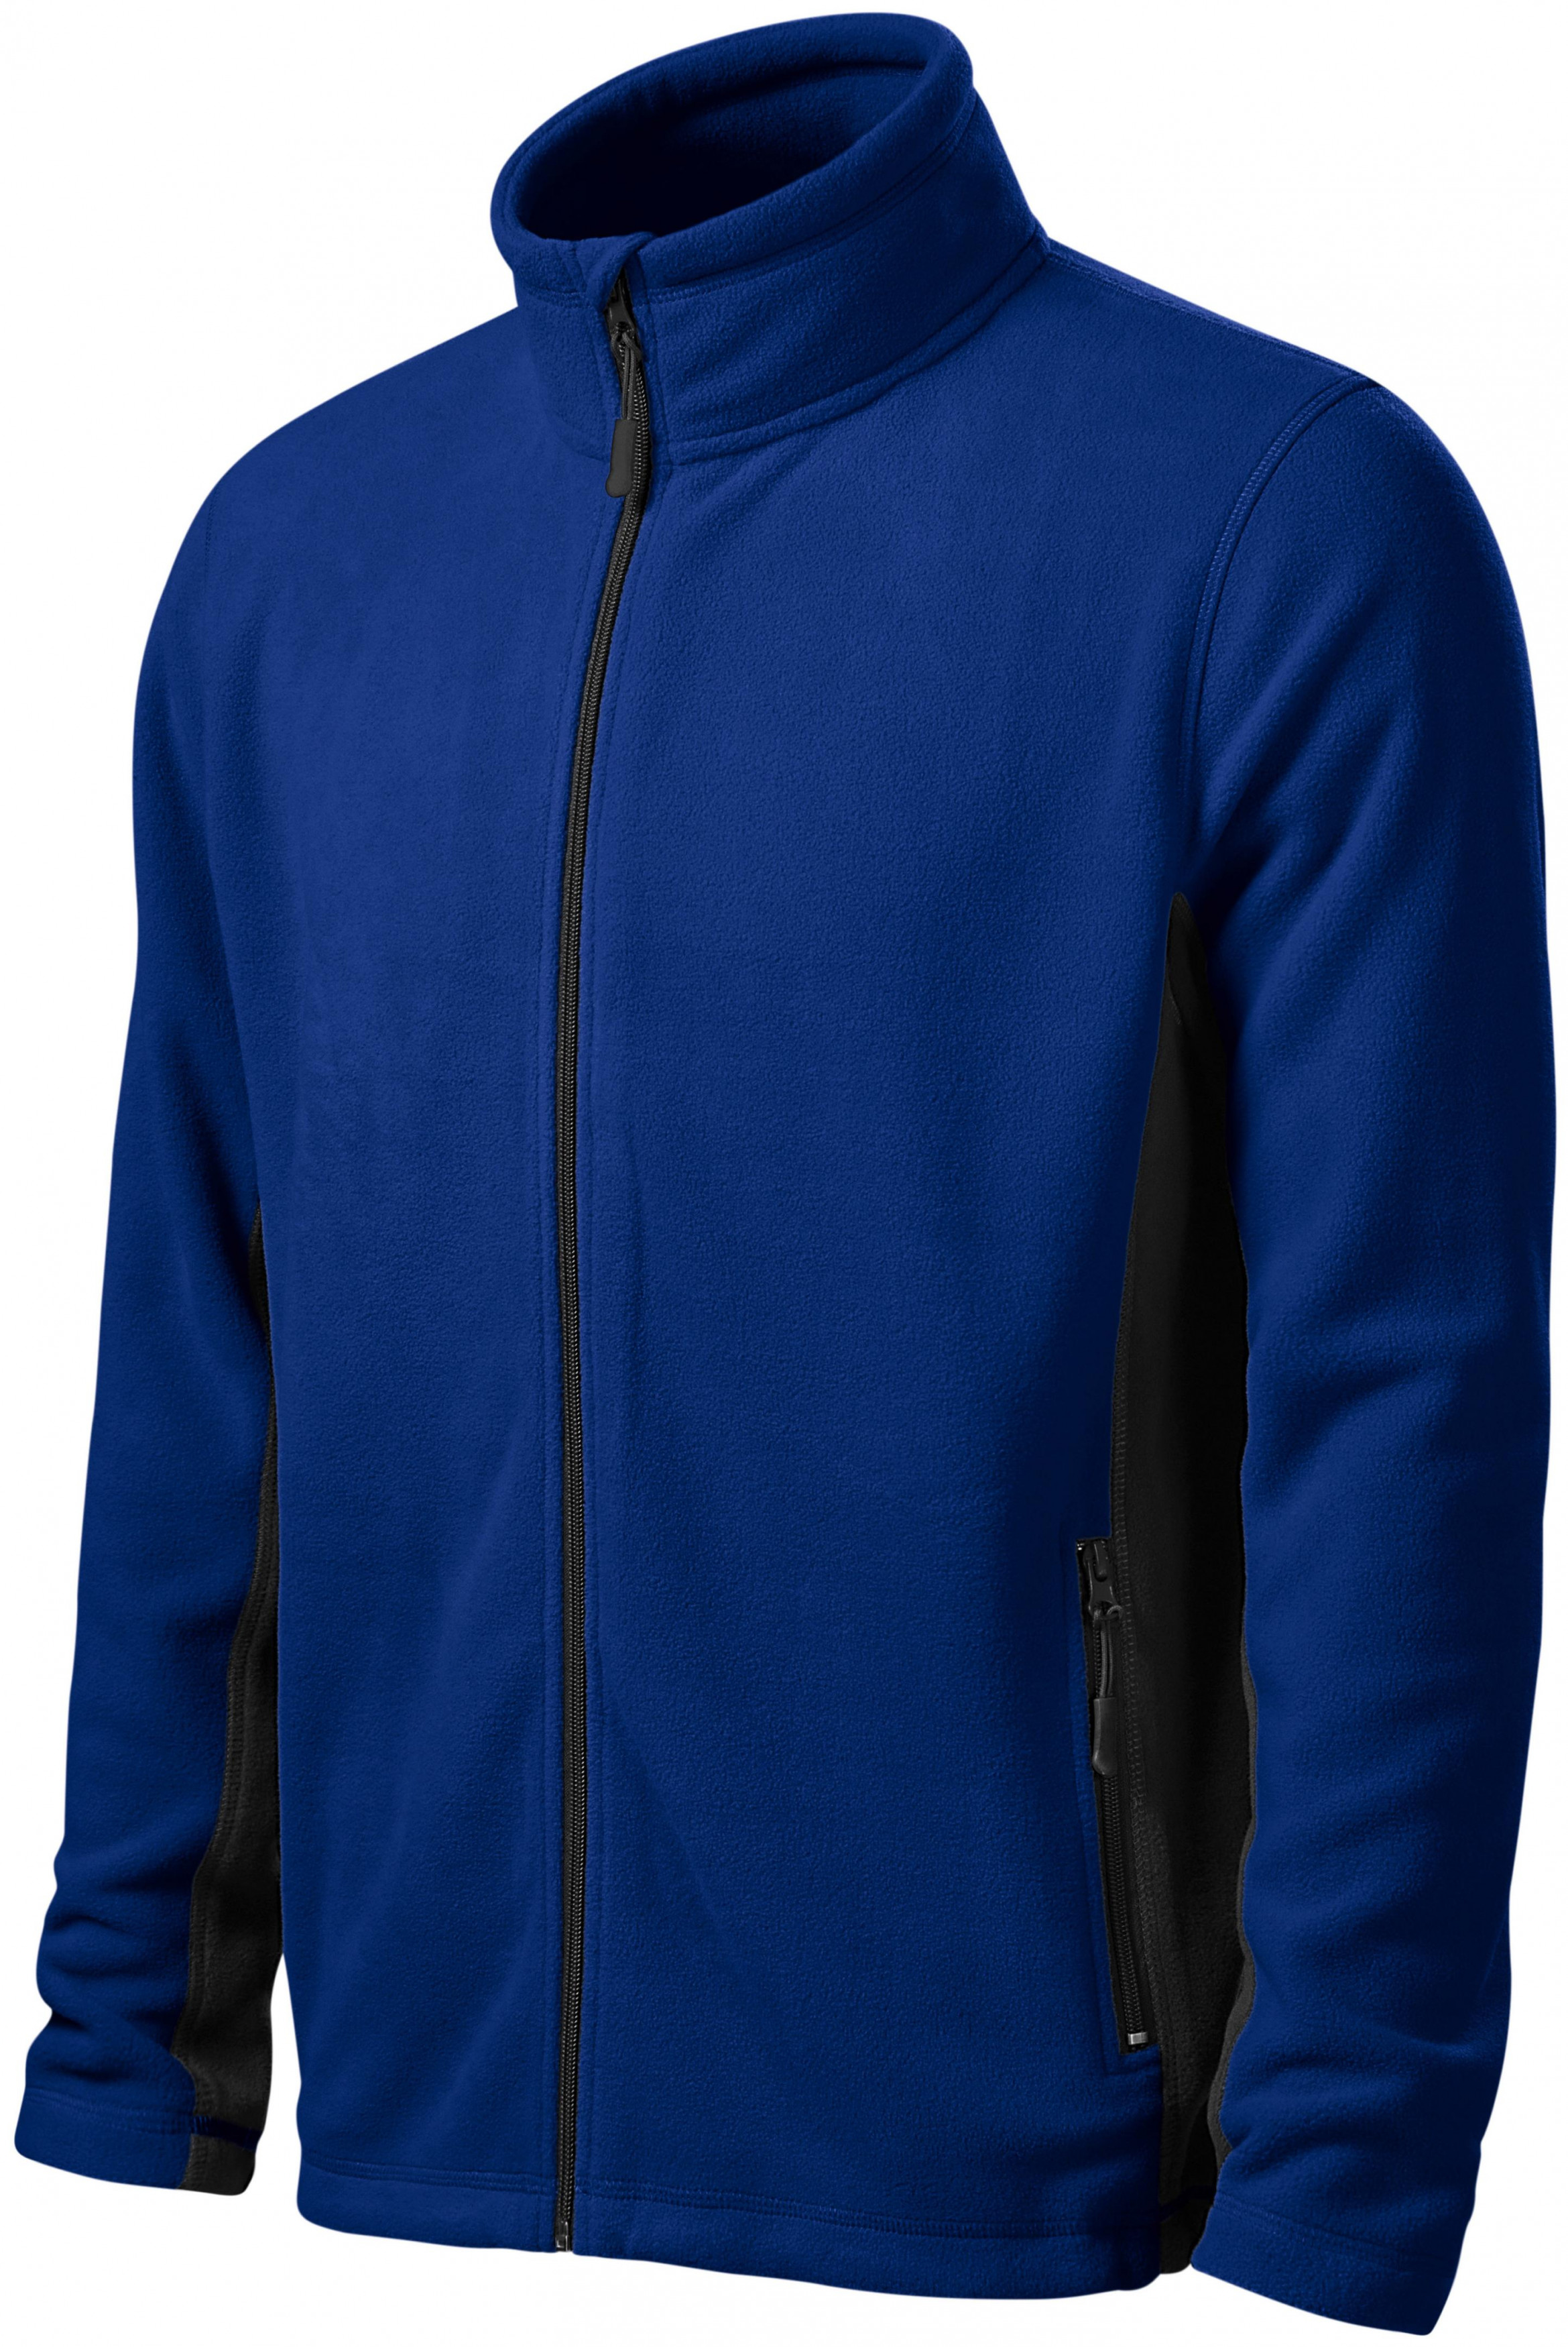 Pánska fleecová bunda kontrastná, kráľovská modrá, L